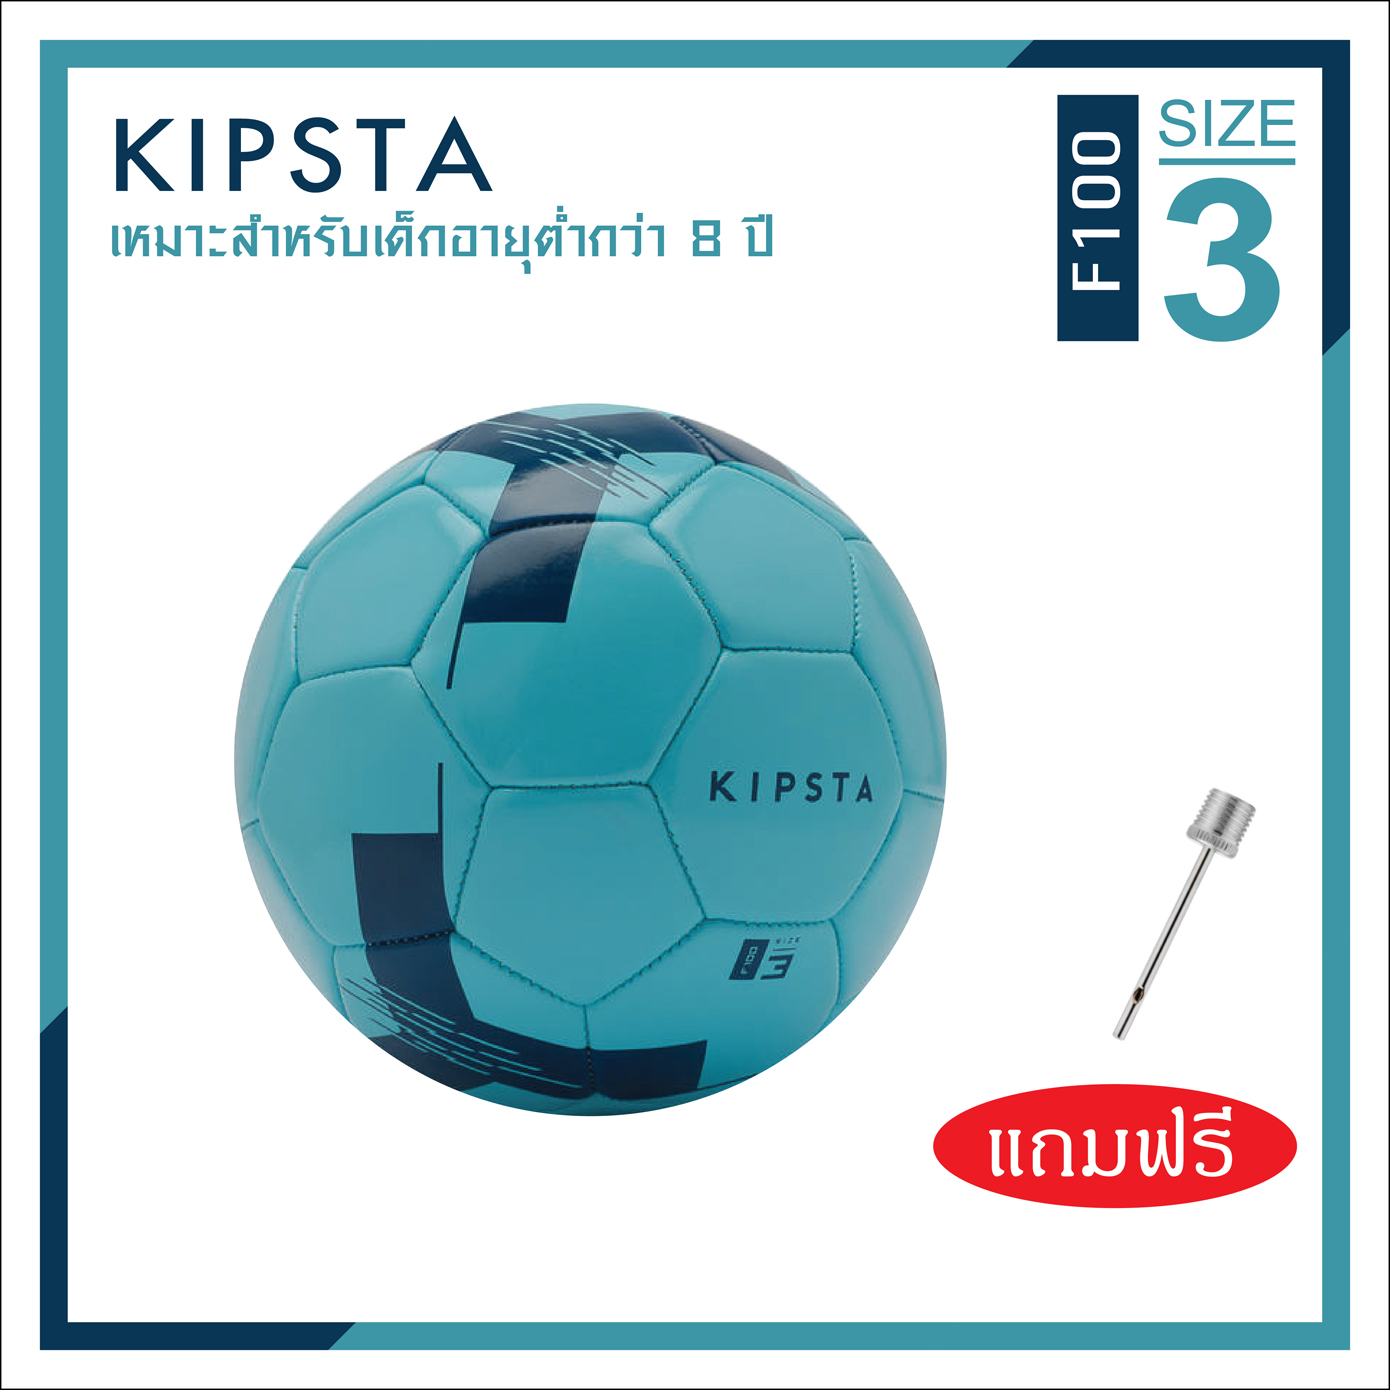 ลูกฟุตบอล ลูกบอล เบอร์ 5, 4, 3  KIPSTA (แบนด์จากฝรั่งเศส) รุ่น F100 หนังเย็บ PVC นุ่มสบายเท้า Football Soccer Ball Size 5 ราคาพิเศษ พร้อมส่งทั่วไทย จำนวนจำกัด!!